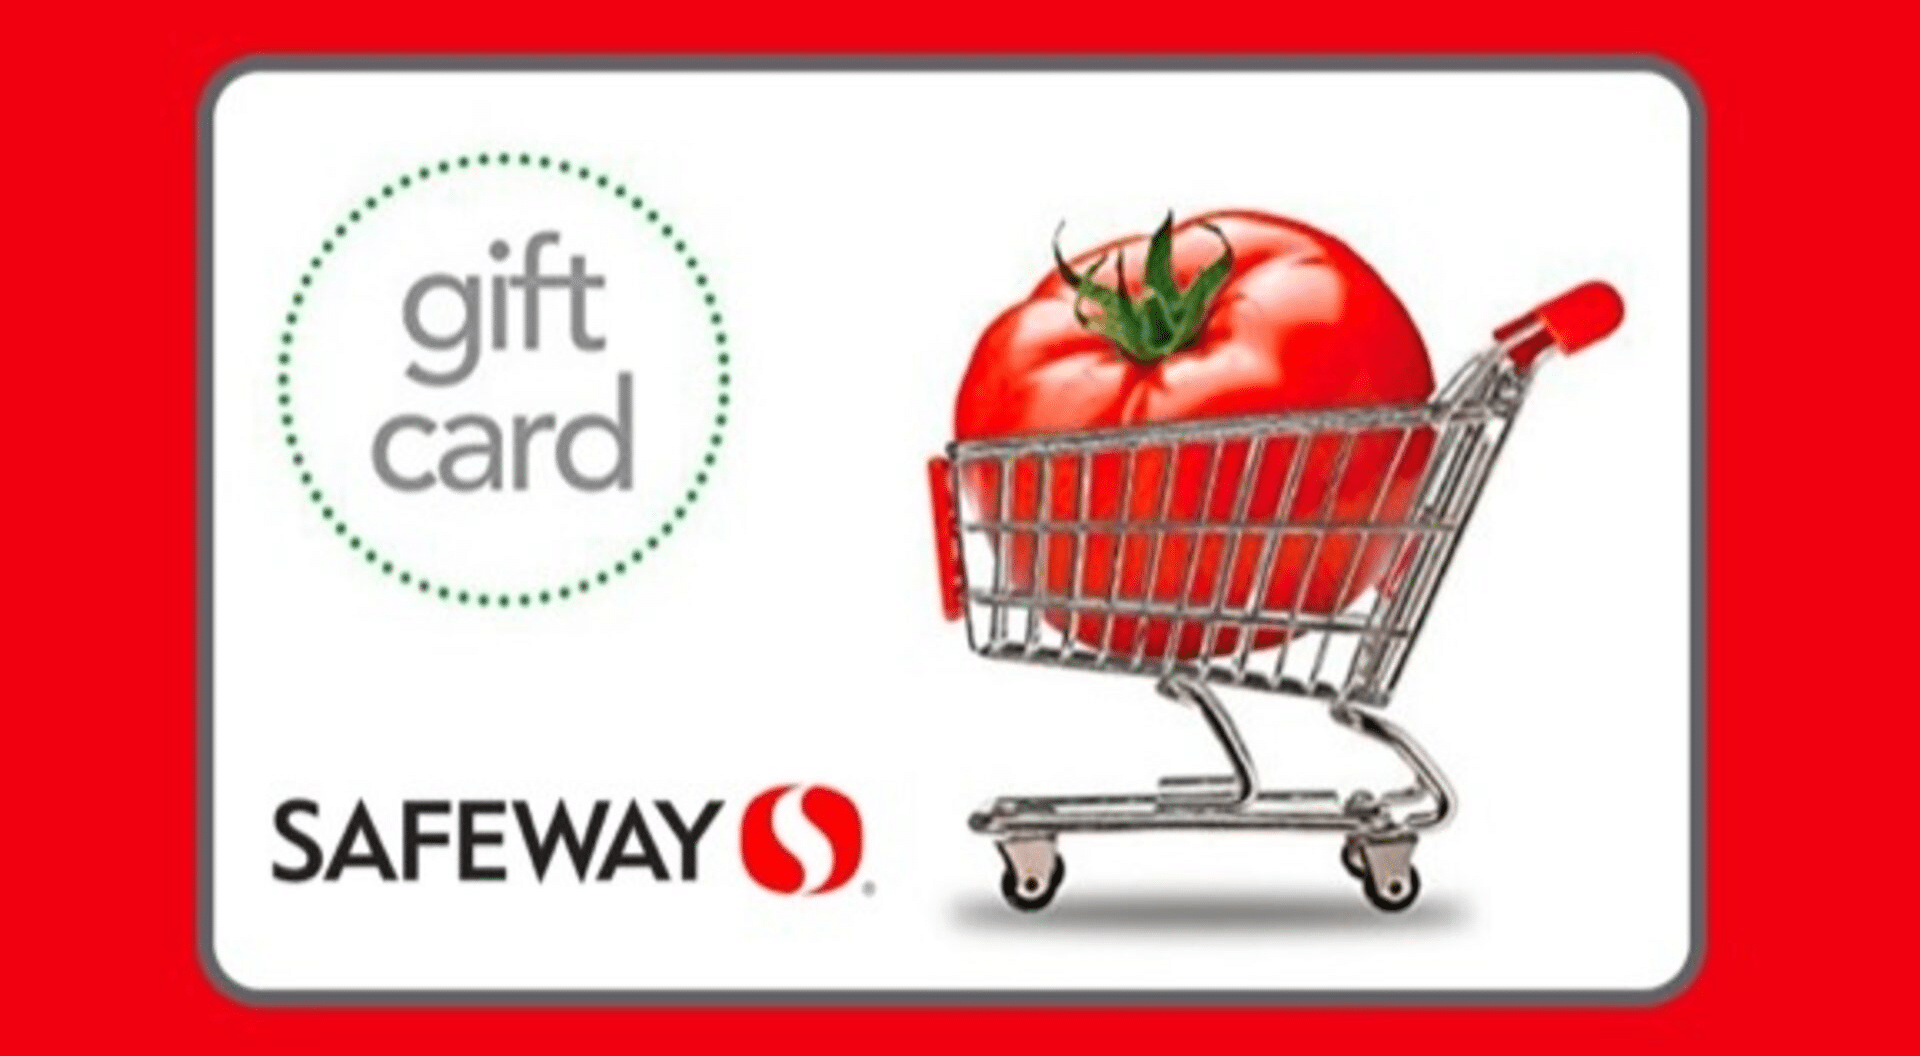 Safeway-Gift-Card